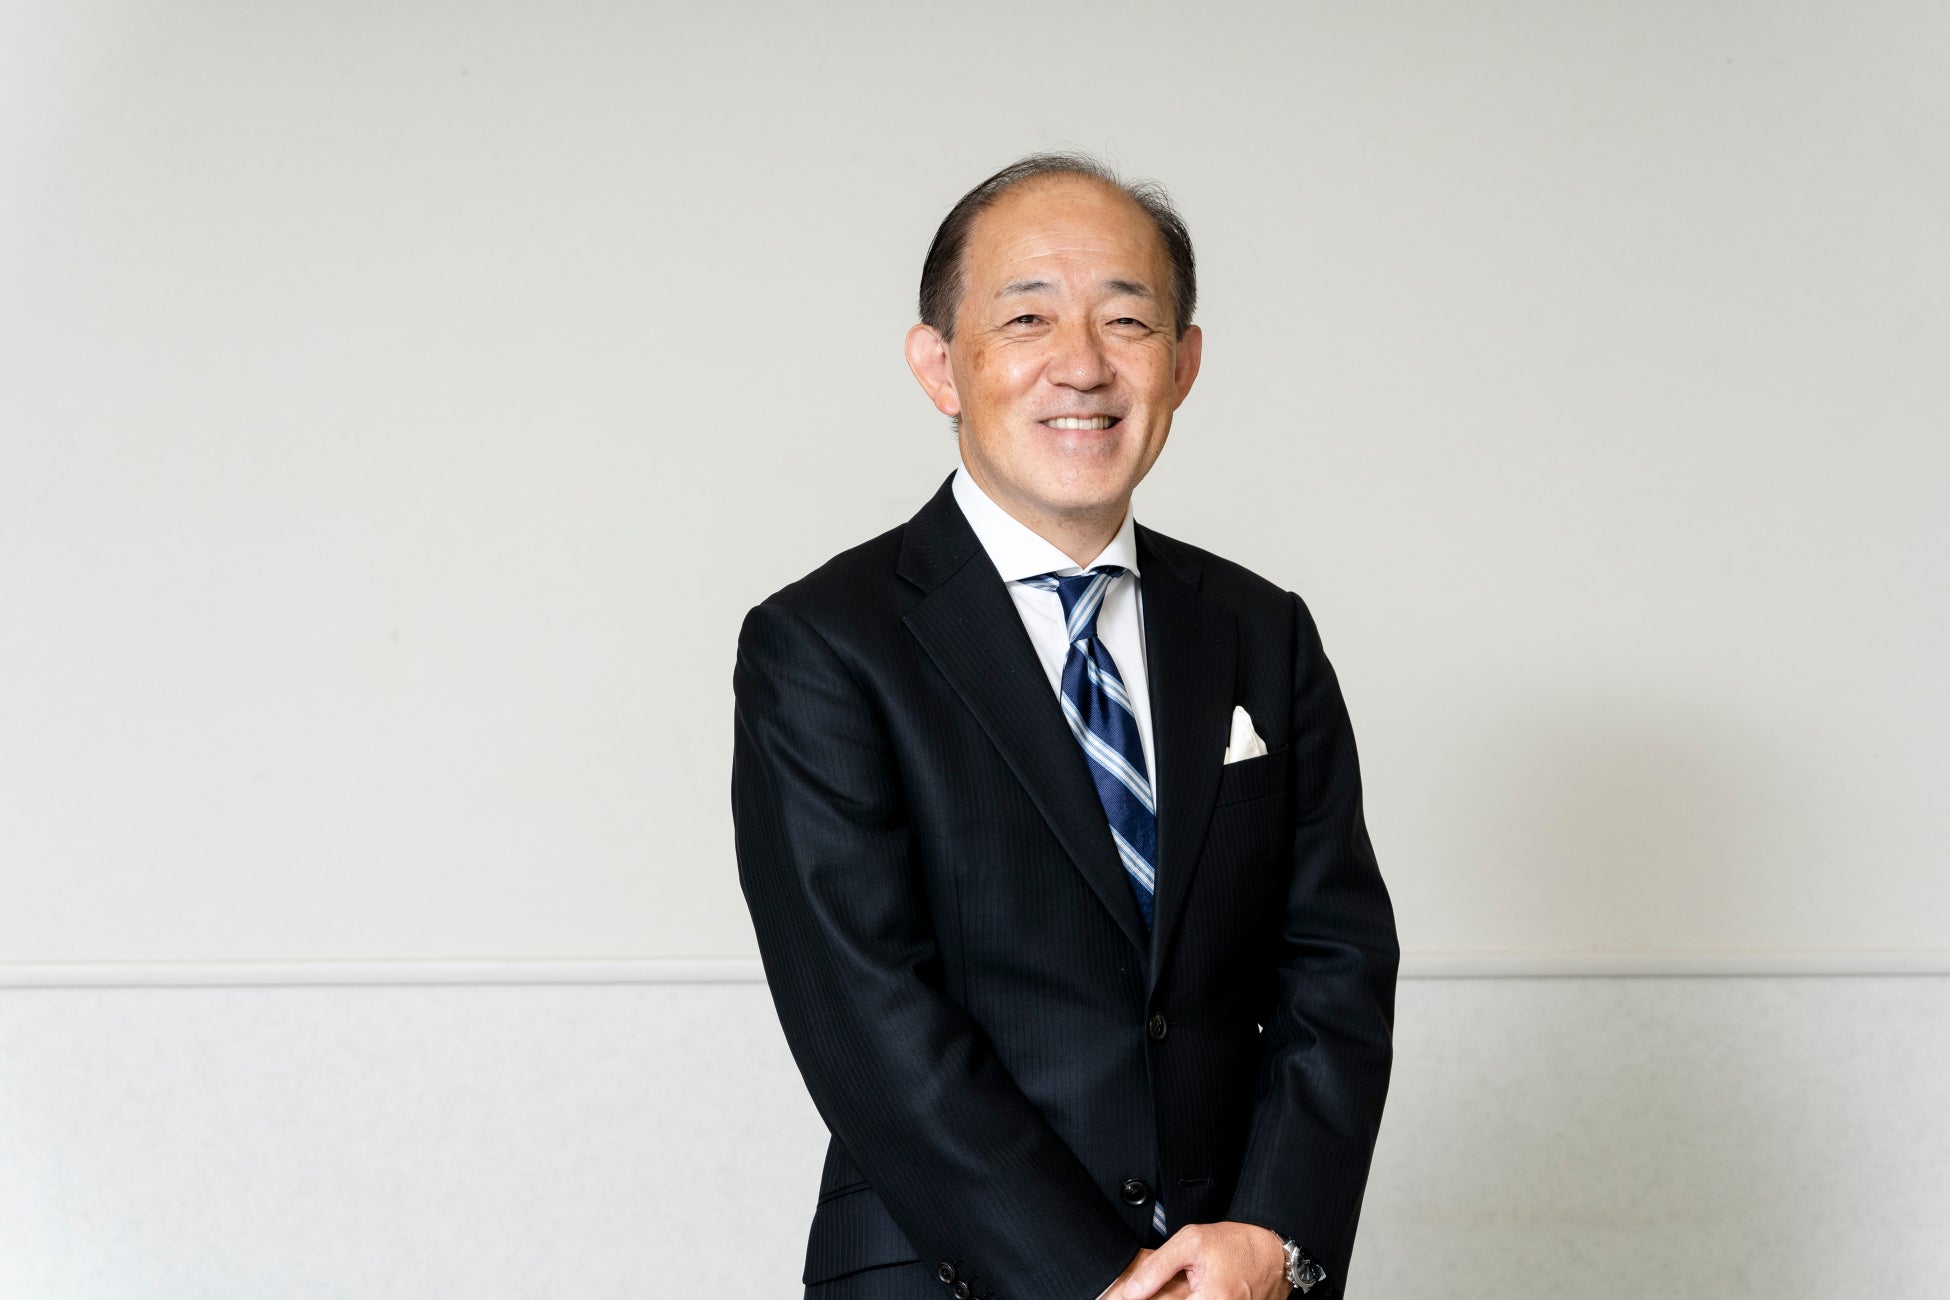 弊社 取締役代表執行役社長の堀が、一般社団法人 日本展示会協会の会長に就任いたしました。